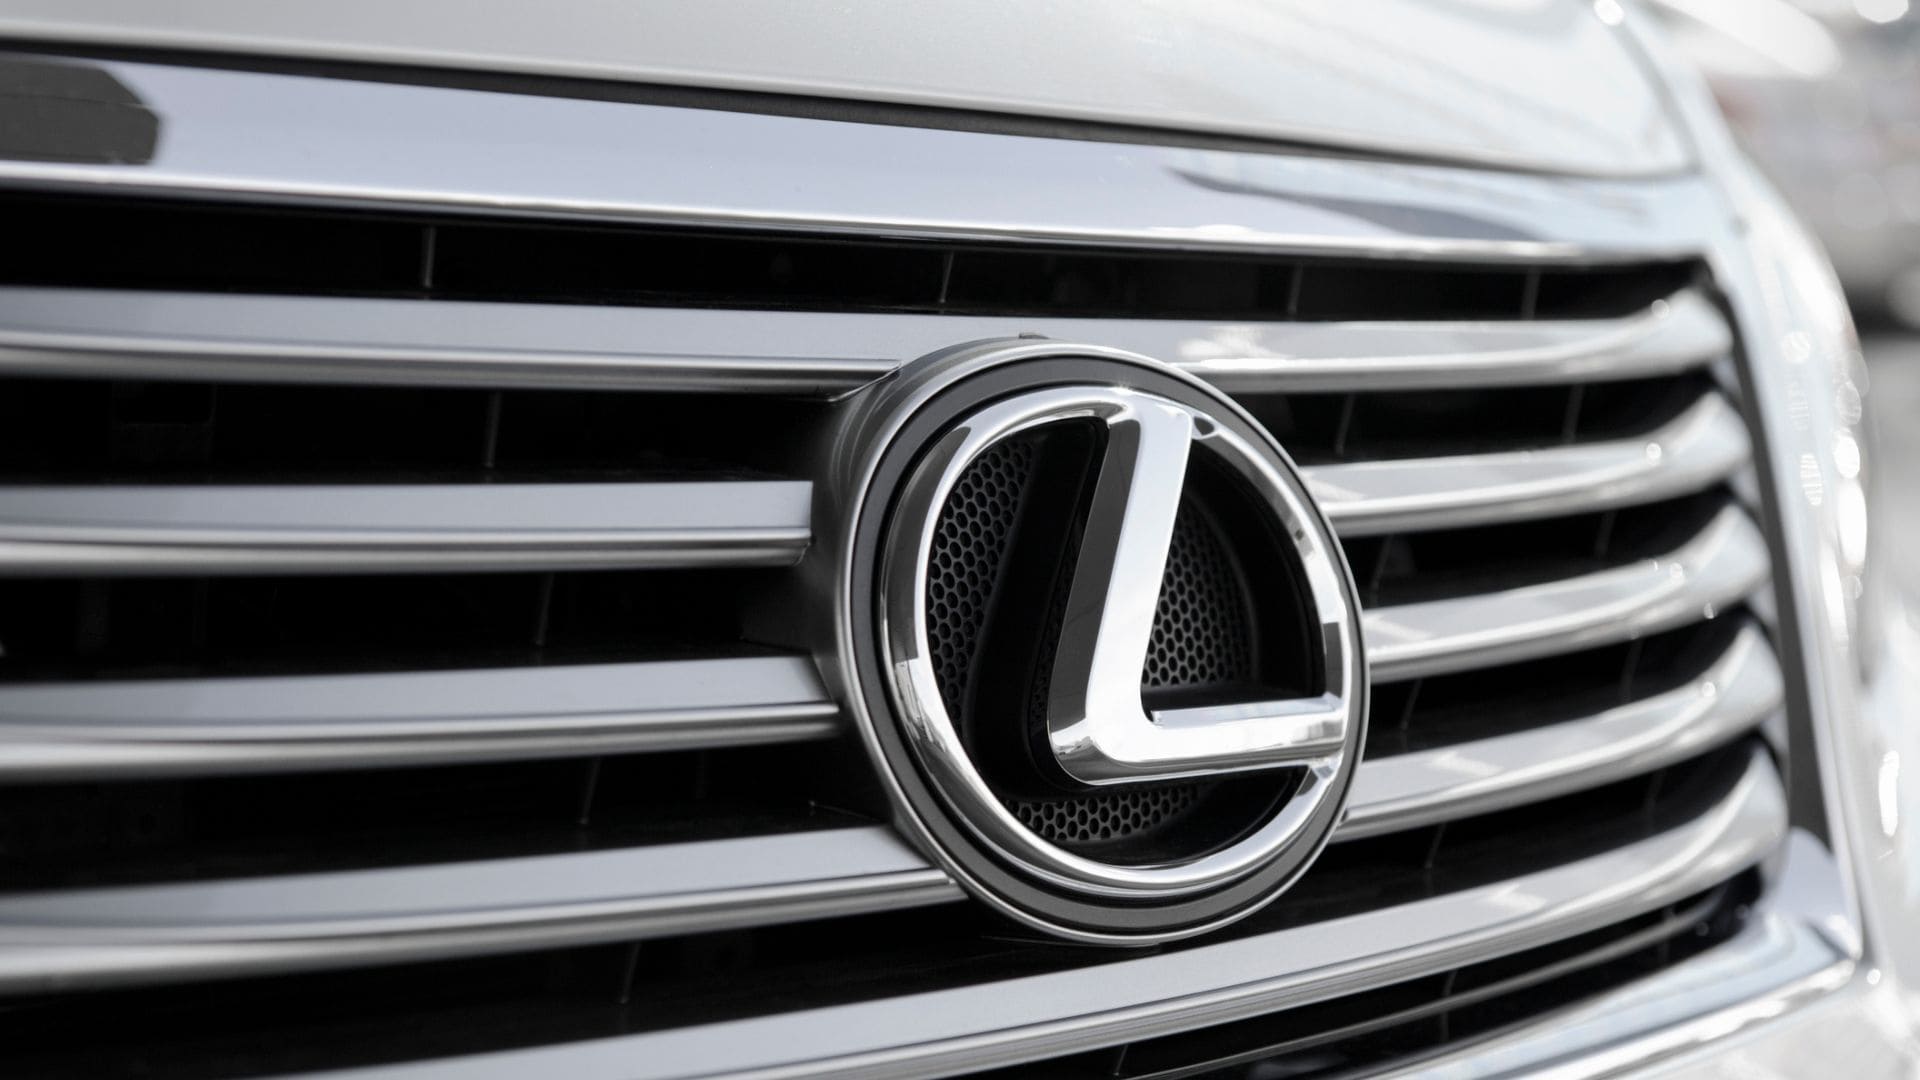 Lexus, el coche más fiable según la OCU